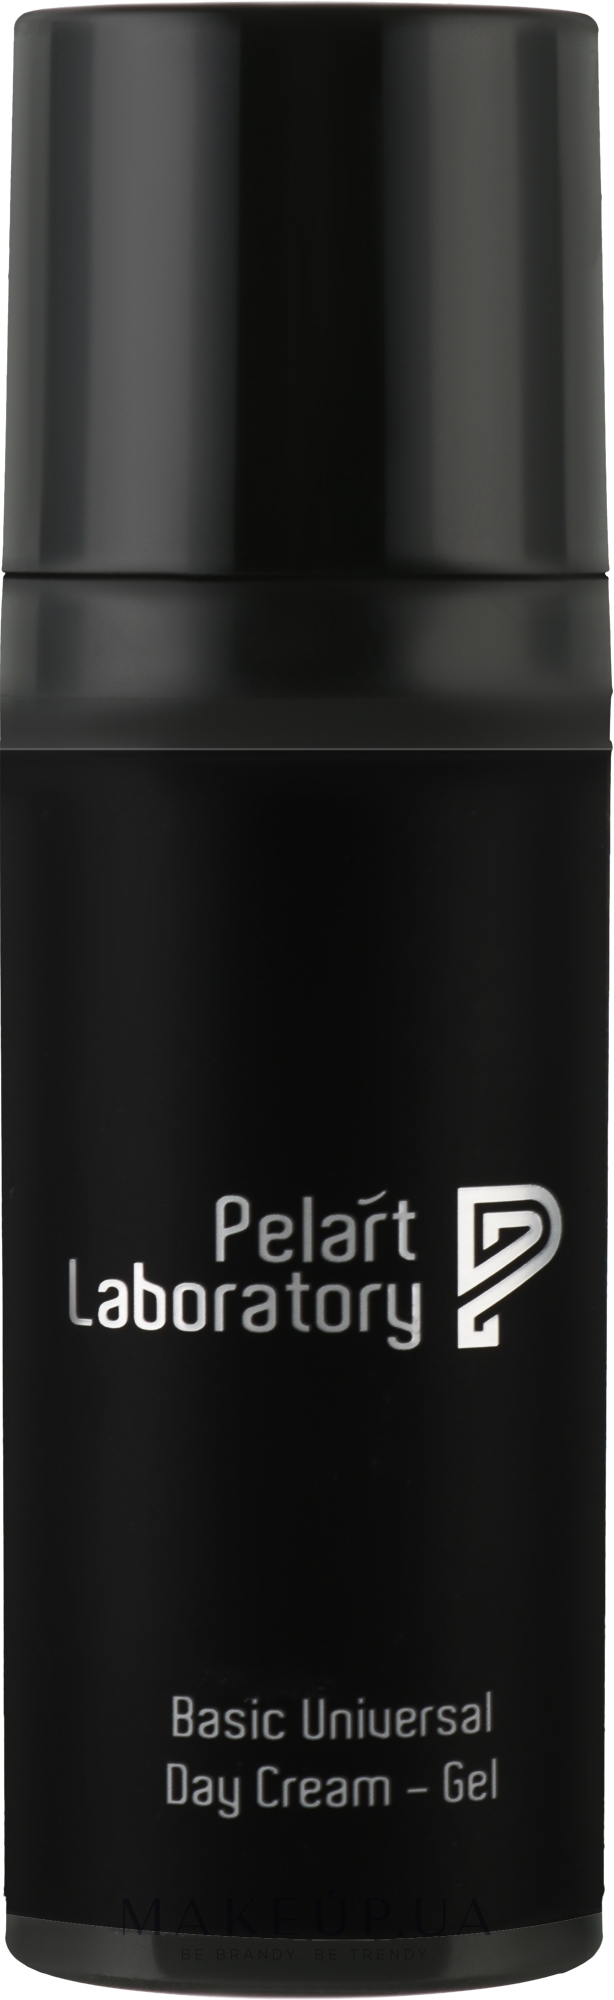 Базовый дневной крем-гель для лица - Pelart Laboratory Basic Universal Day Cream-Gel — фото 50ml